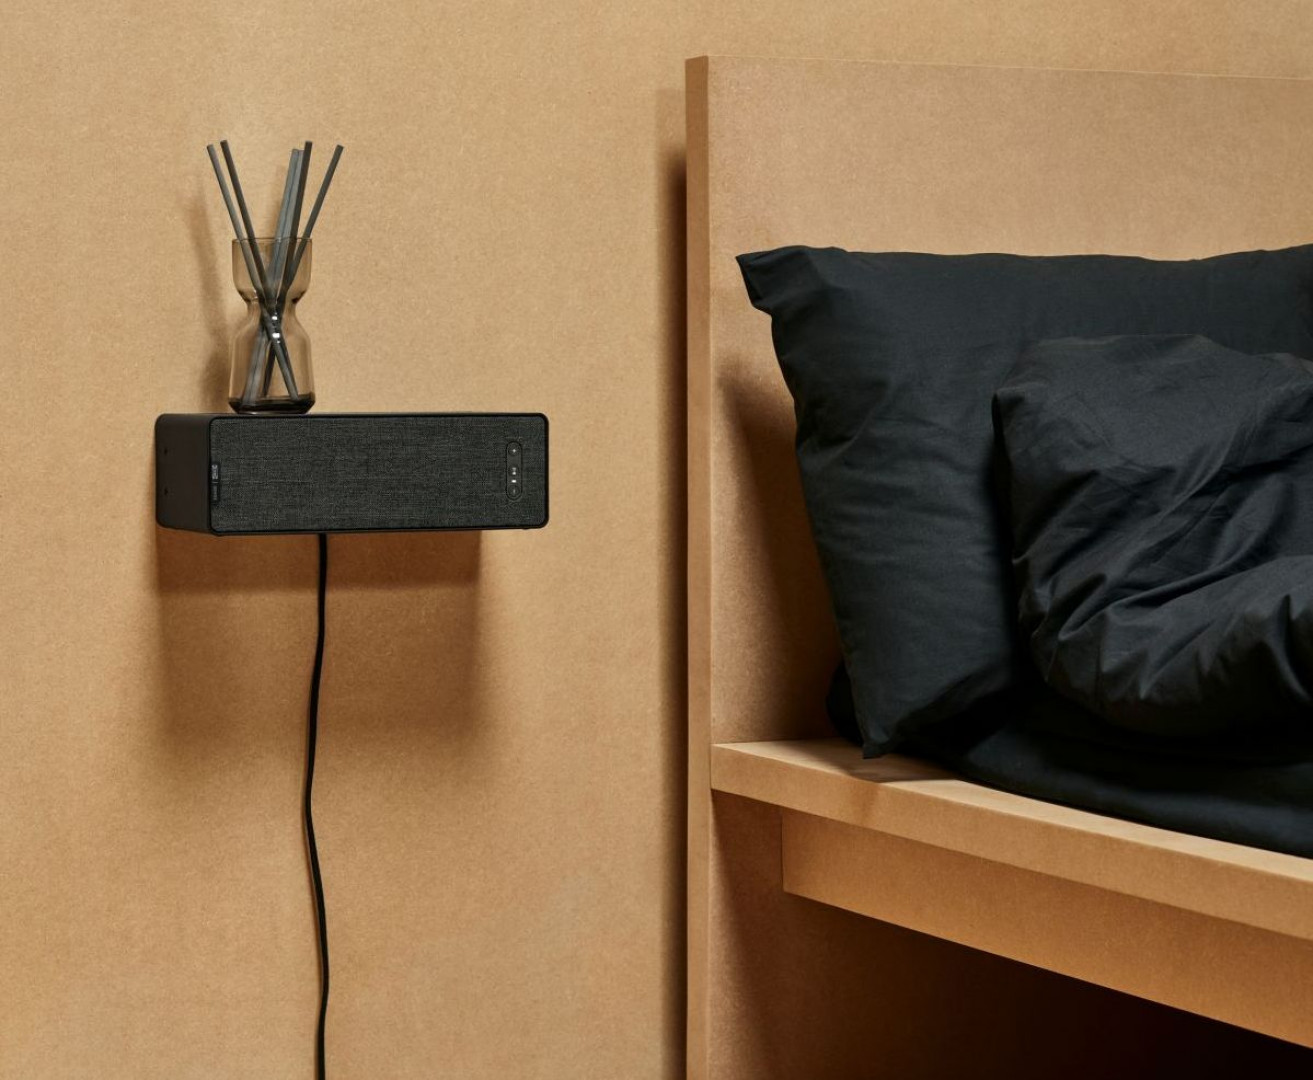 Pierwsze produkty z kolekcji Symfonisk - efekty współpracy firm IKEA i Sonos. Fot. IKEA